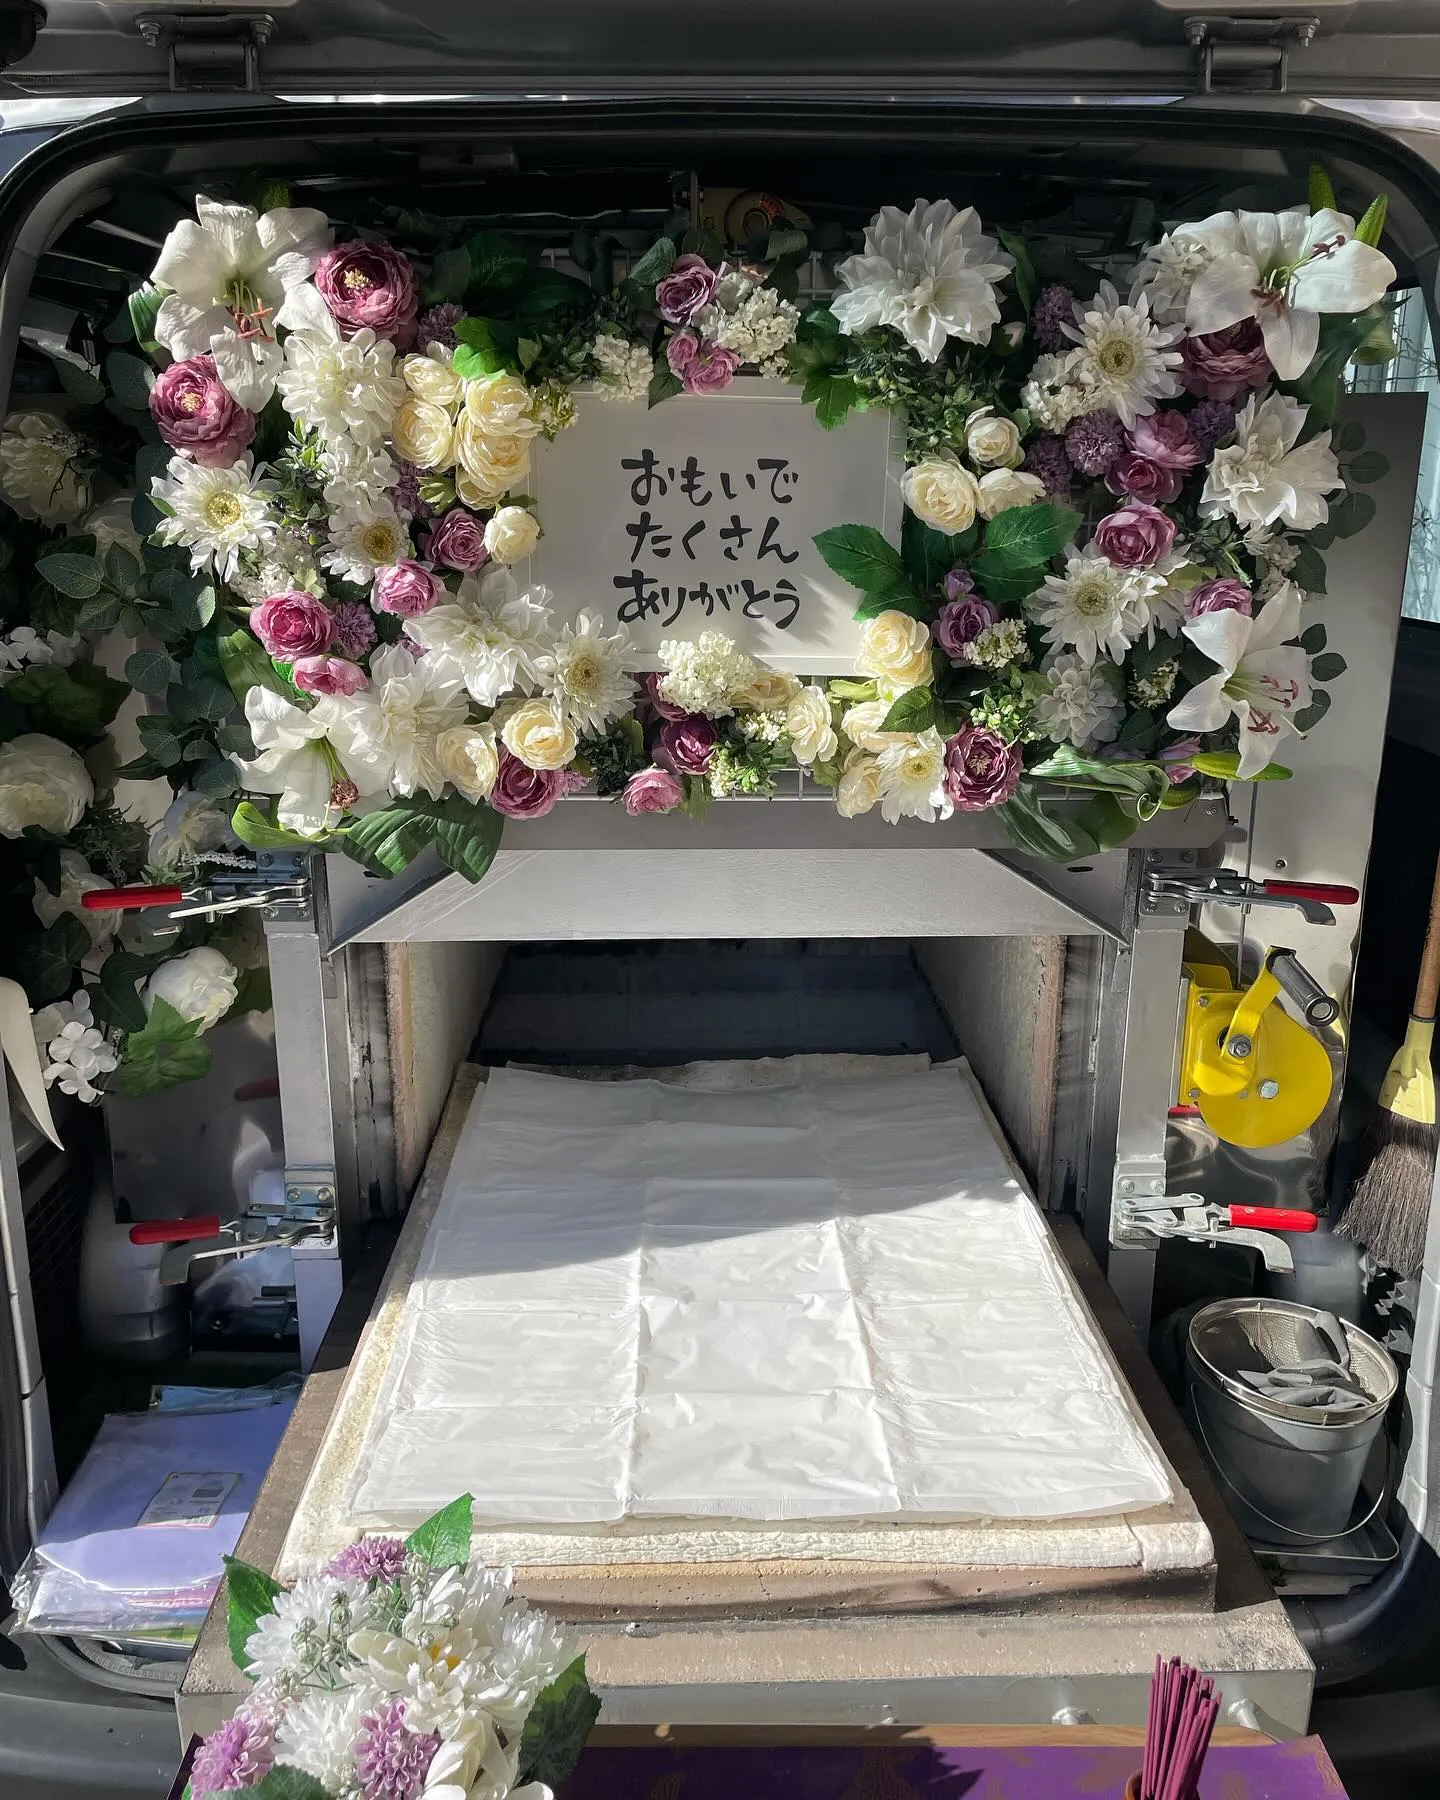 東京都武蔵村山市にてマルプーちゃんのご火葬に伺いました。